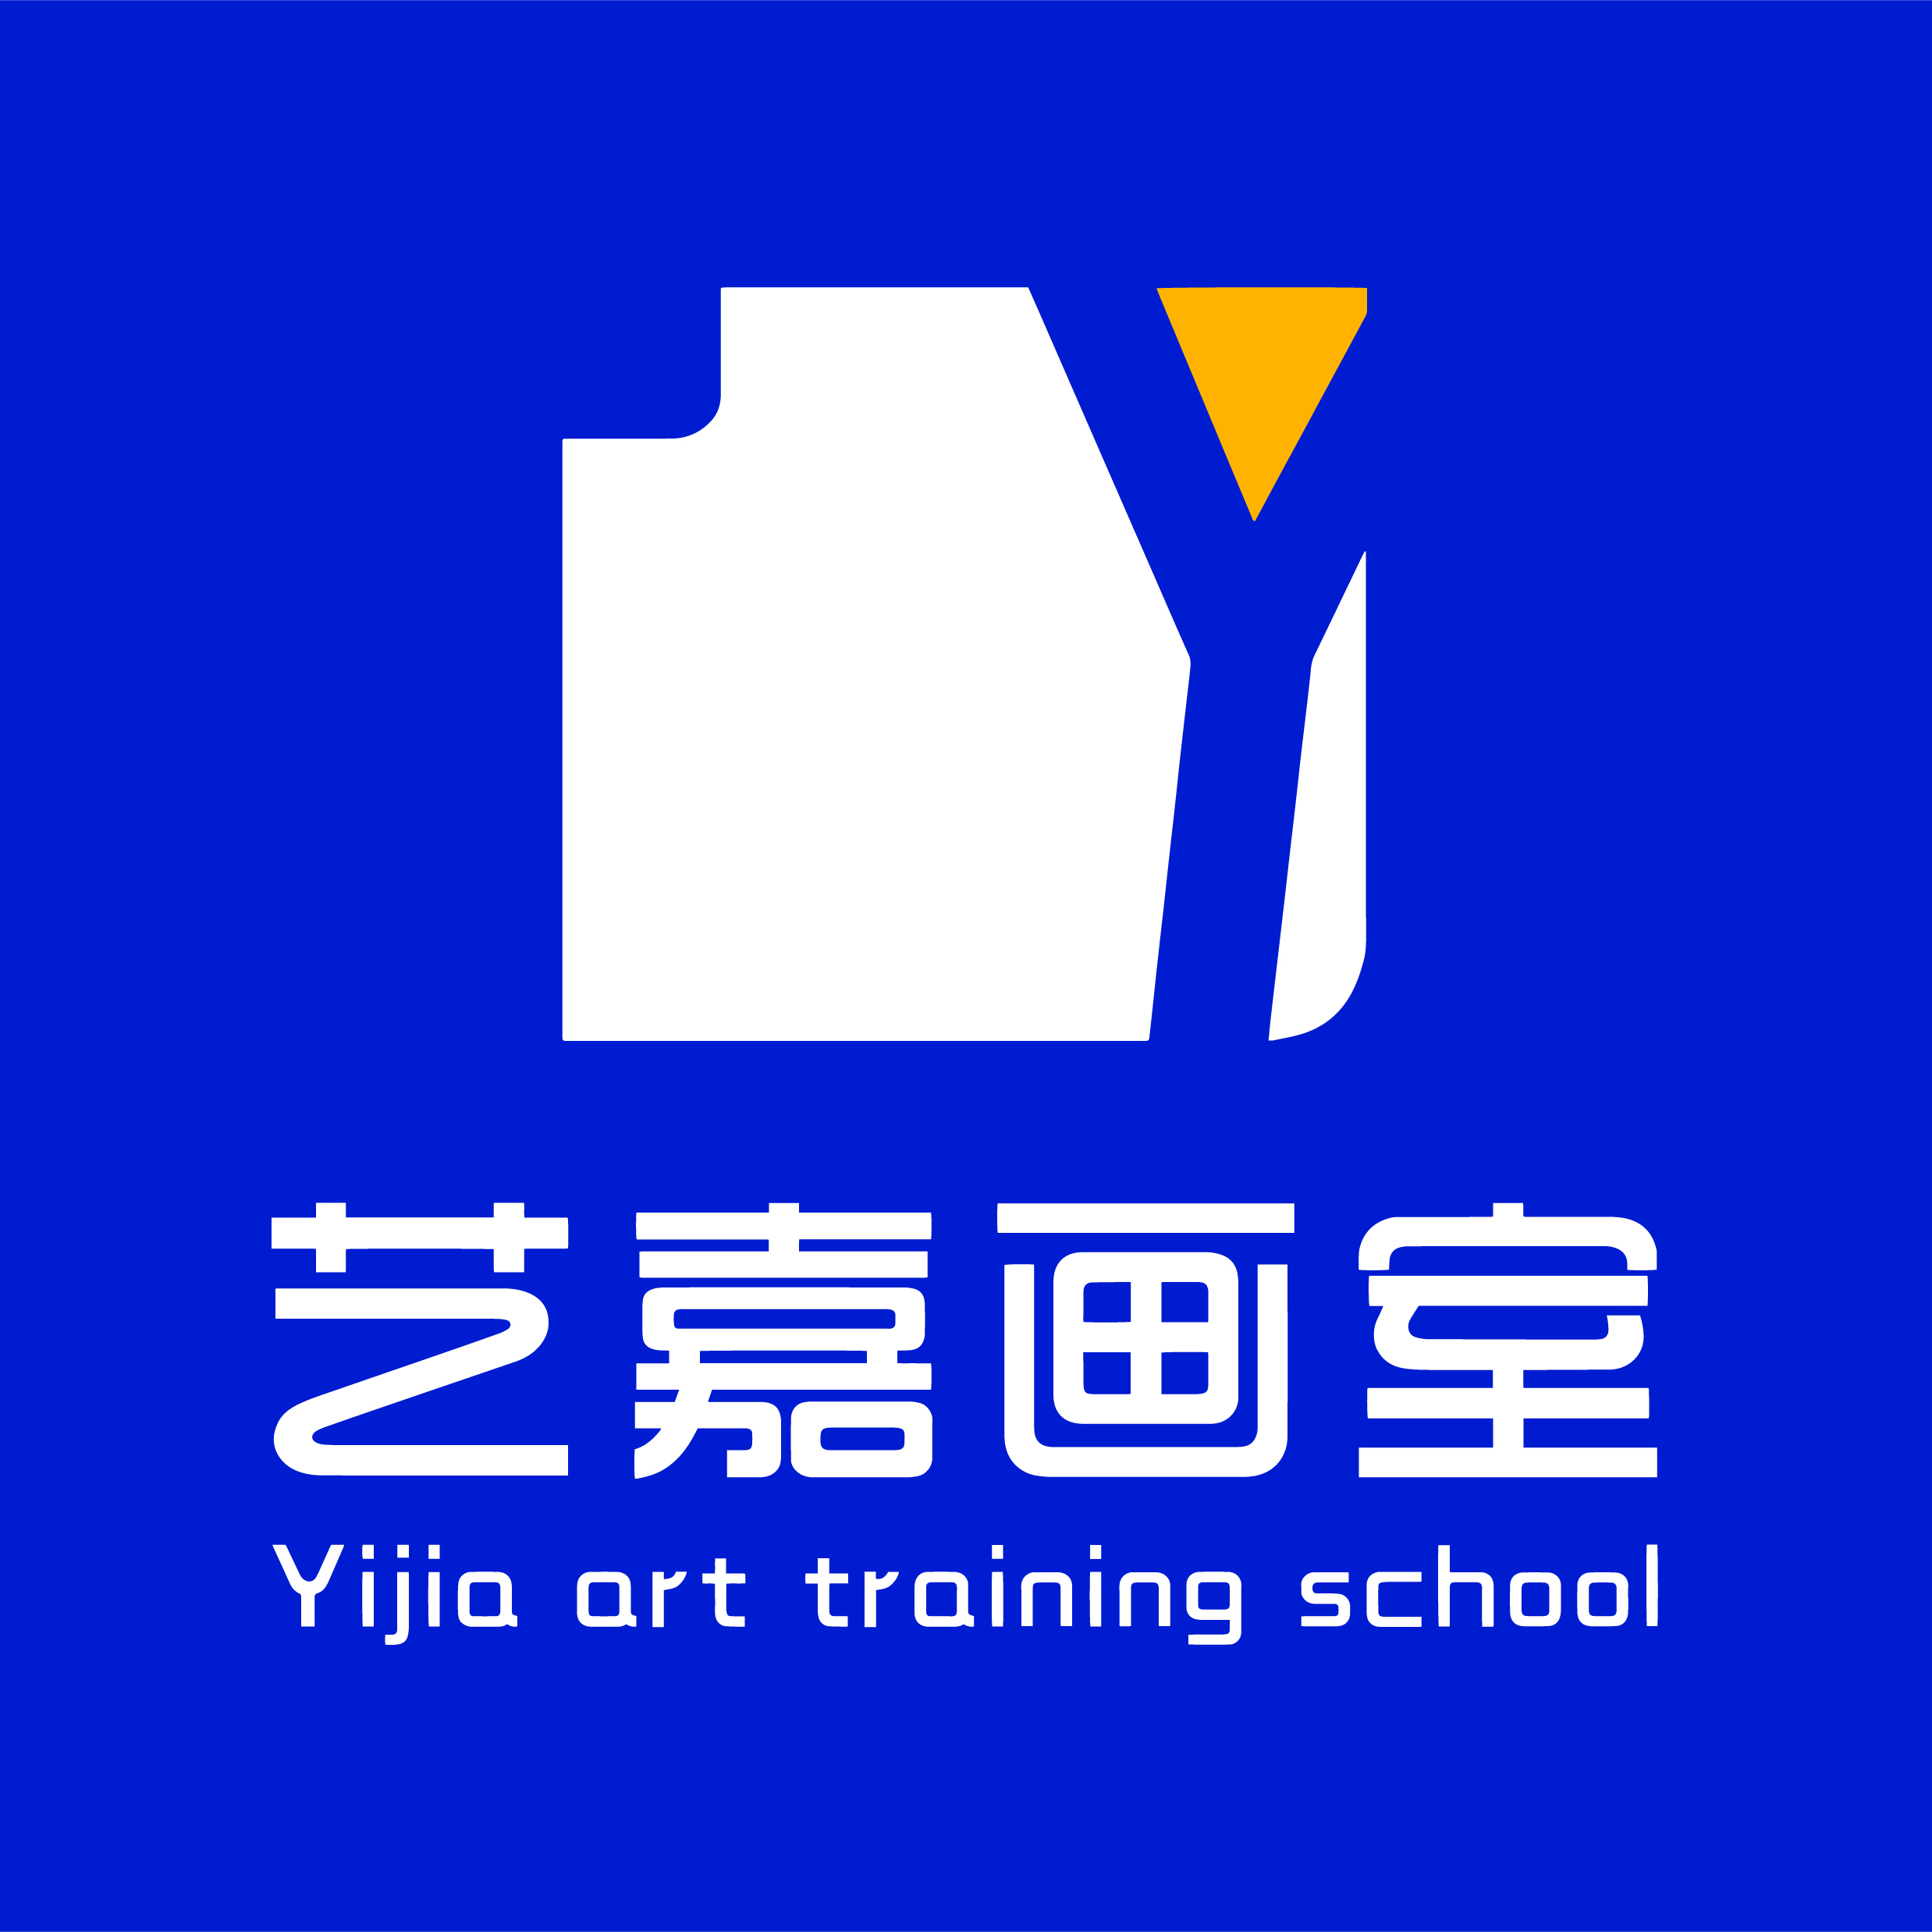 画室logo创意设计图片